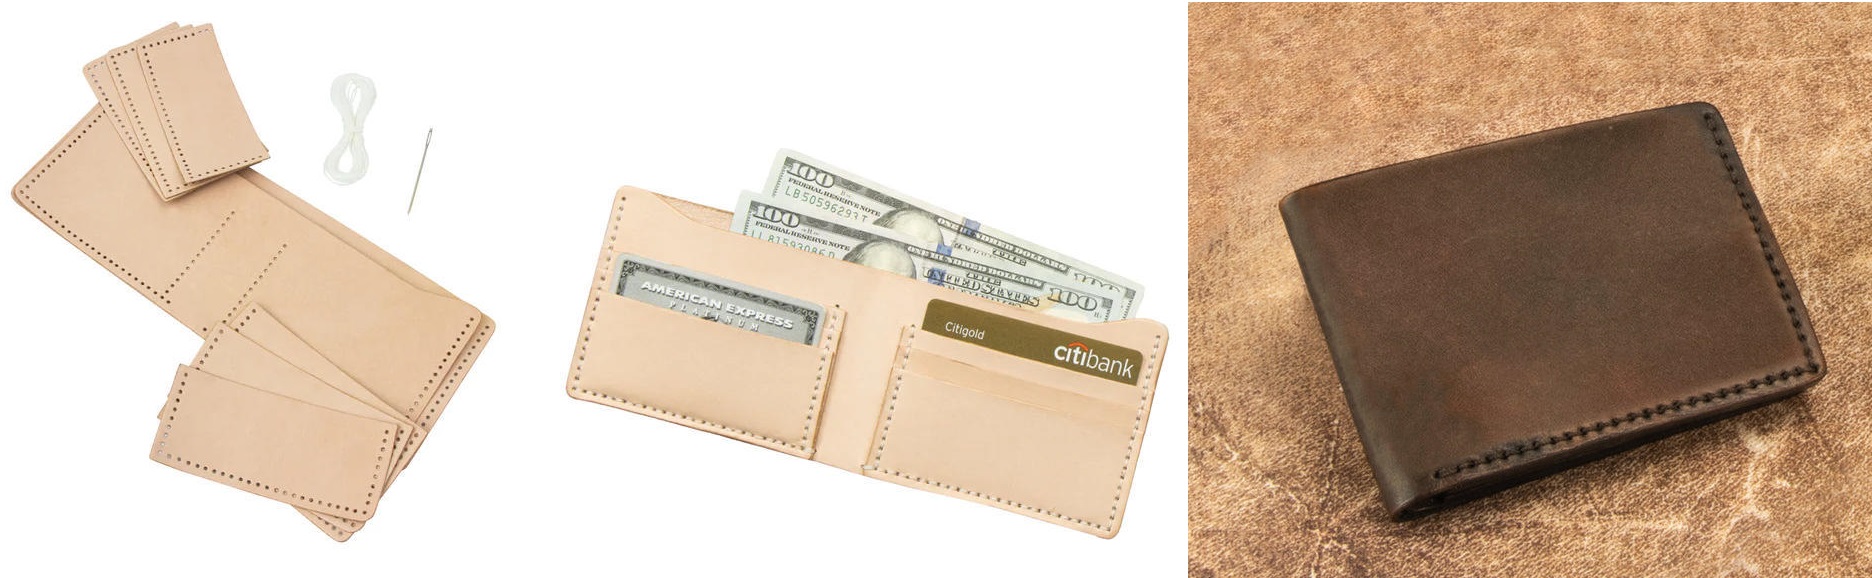 peněženka na papírové bankovky a kreditní karty